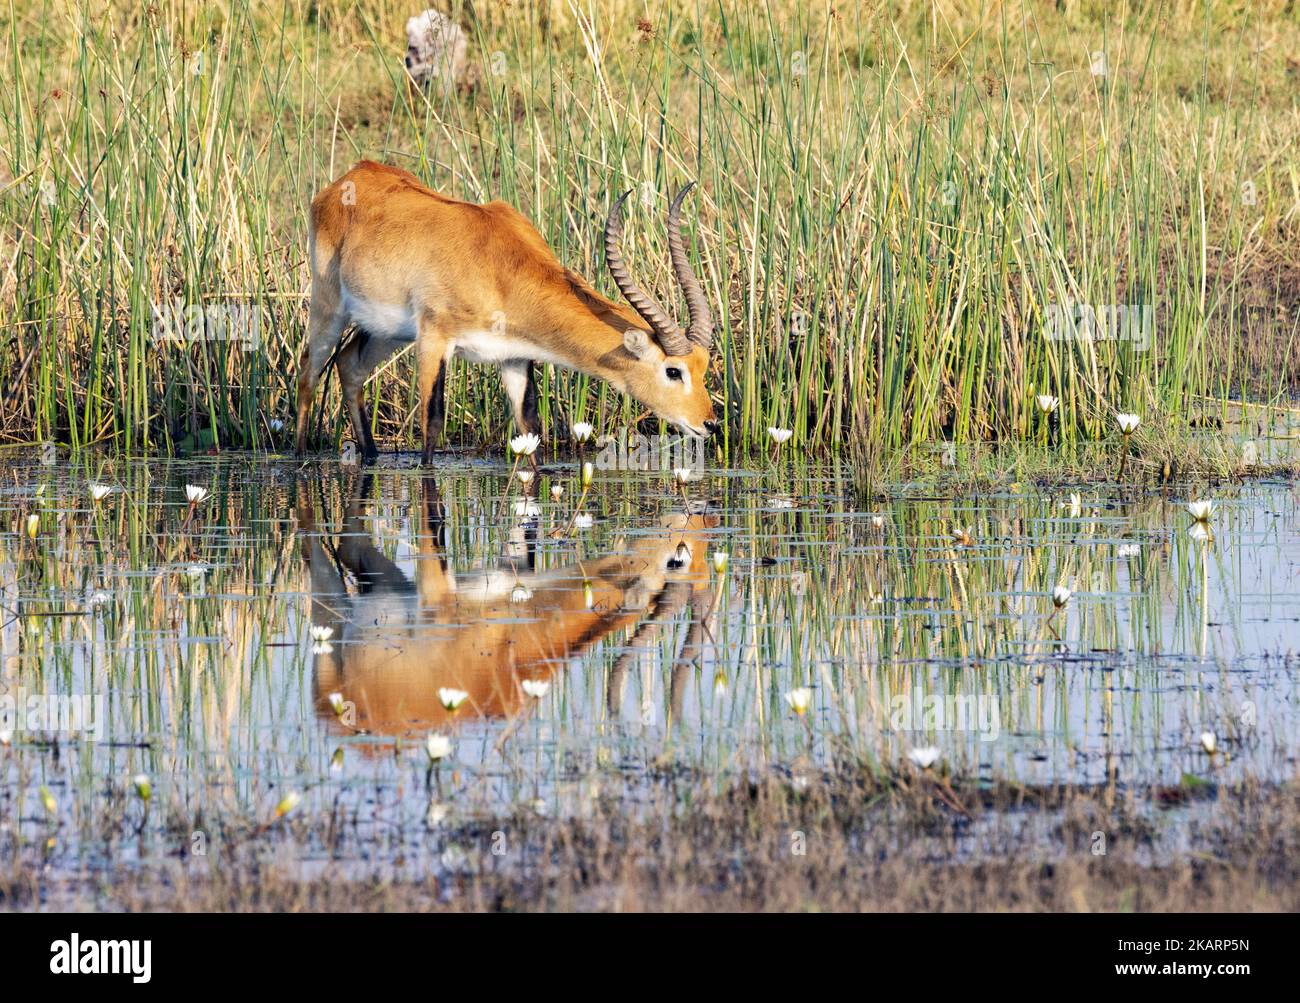 Antilope Red Lechwe buvant de la rivière Kwai, leche de Kobus, réserve de gibier de Moremi, delta d'Okavango, Botswana Afrique. Faune africaine. Banque D'Images